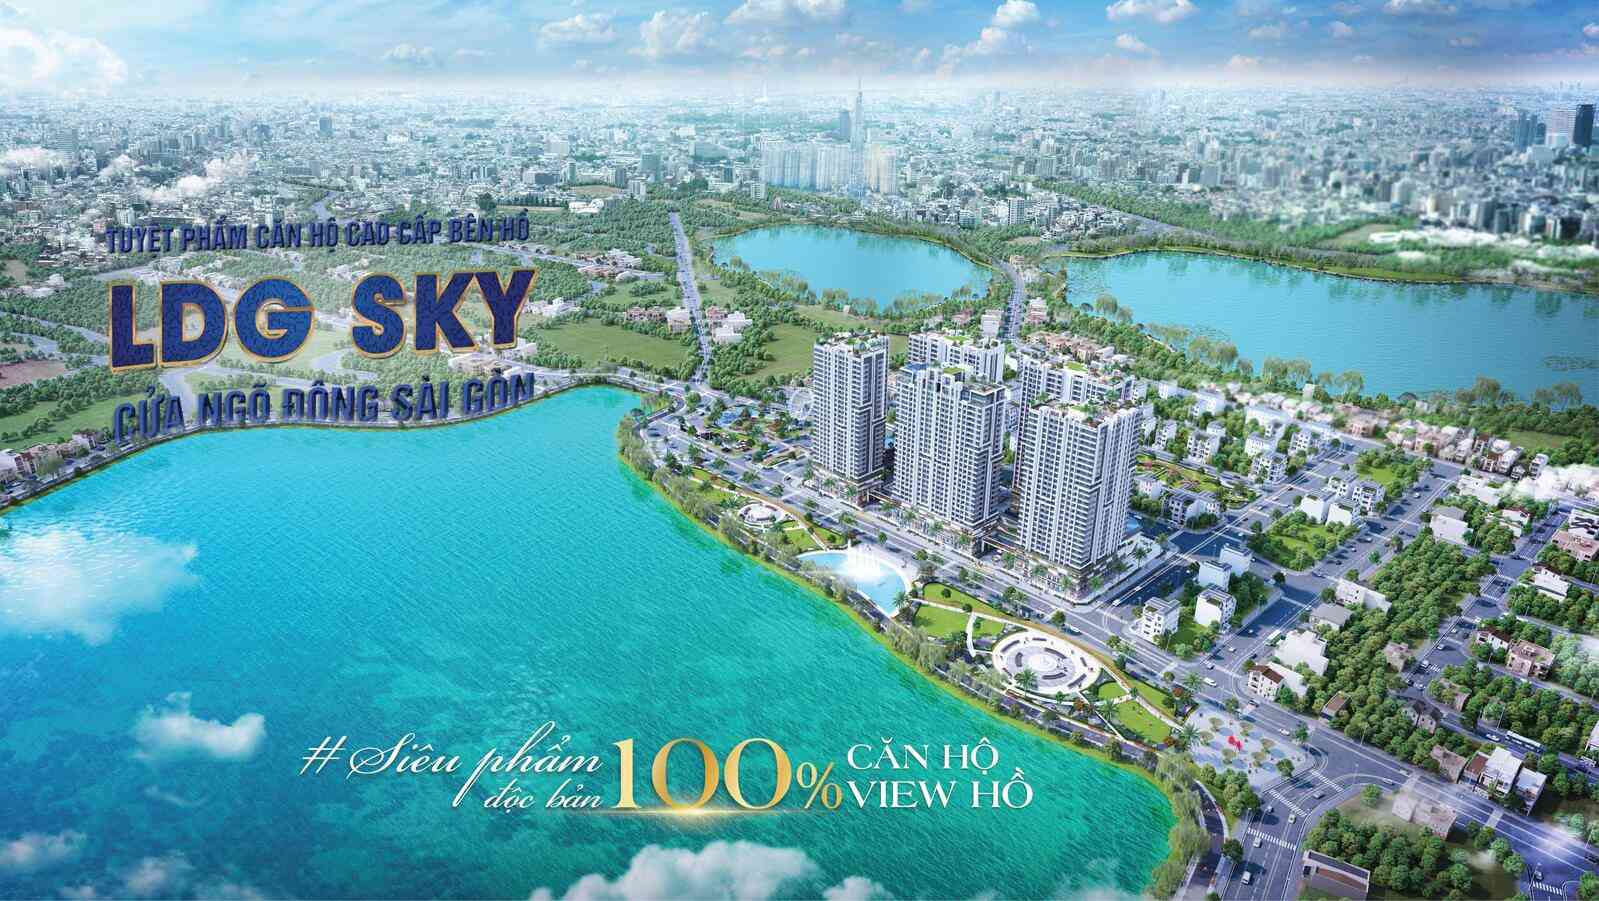 LDG Sky - 100套湖景公寓独有的产品